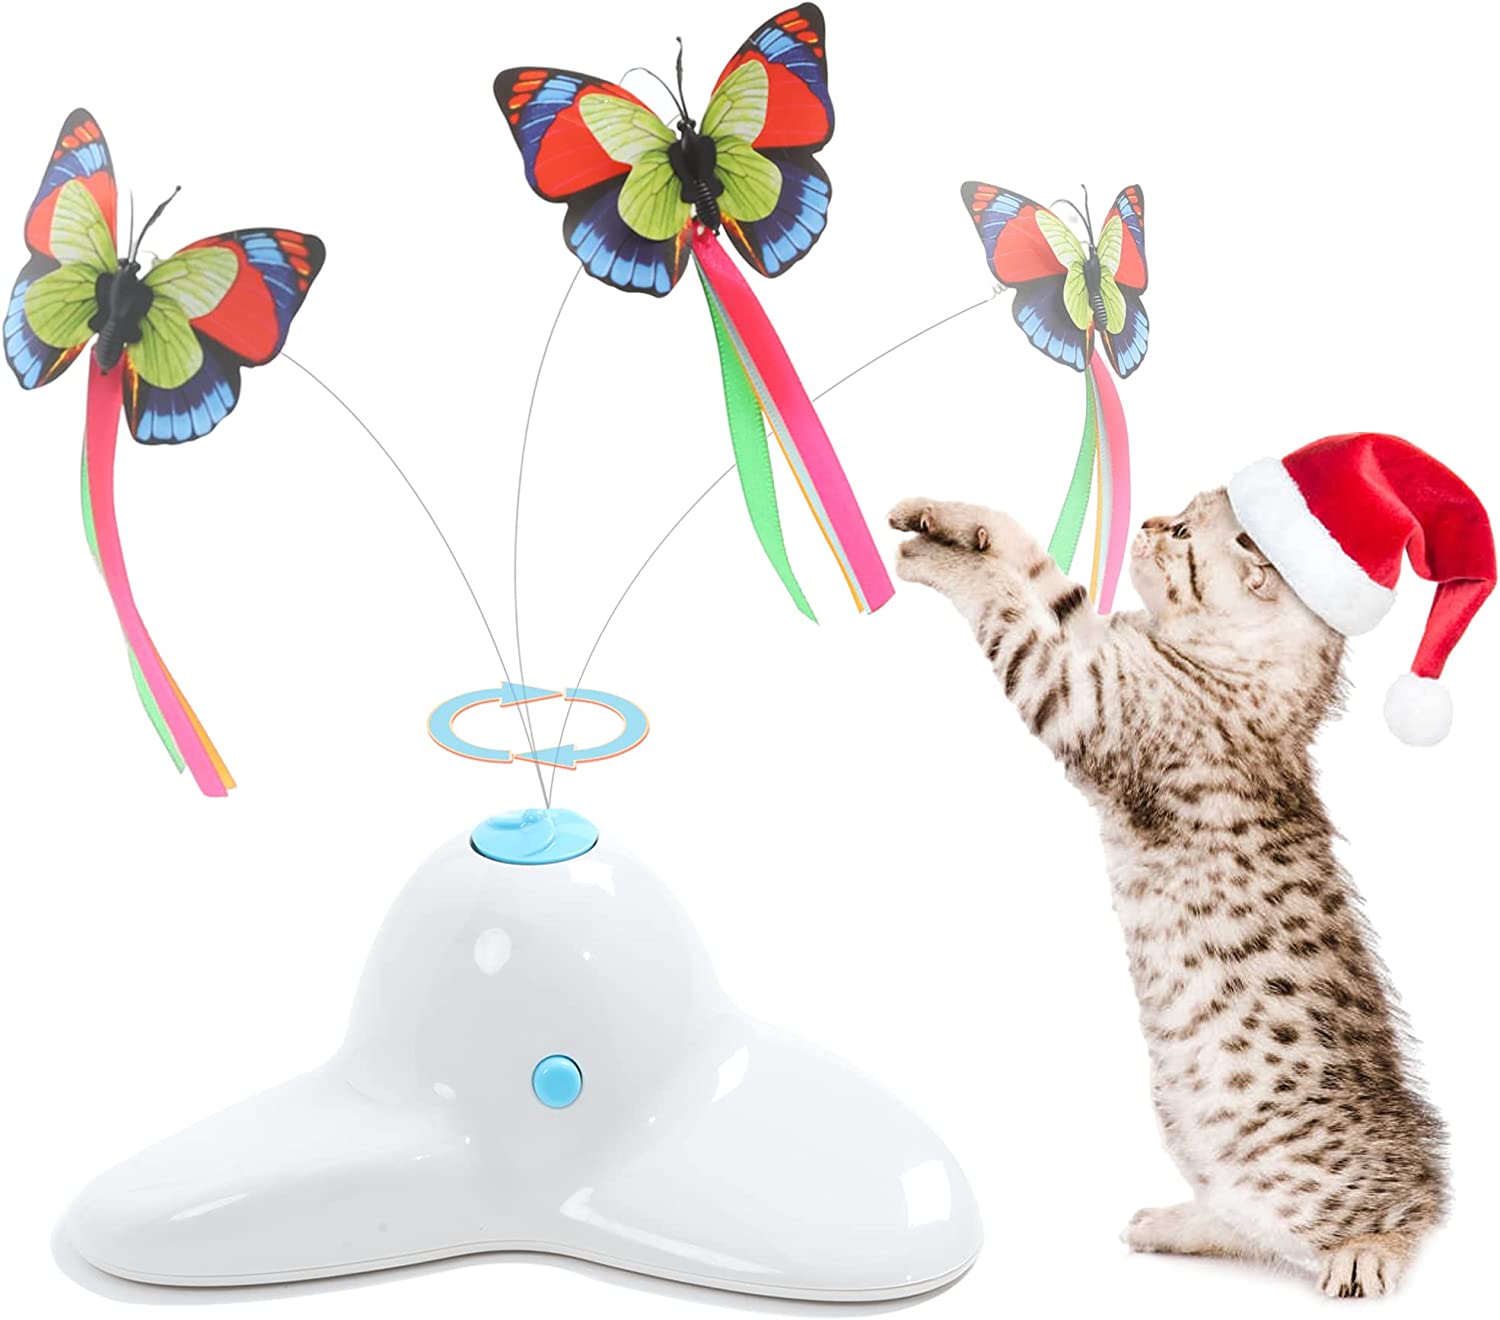 Lodra interaktive të maceve me shkop rrotullues të fluturave elektrike